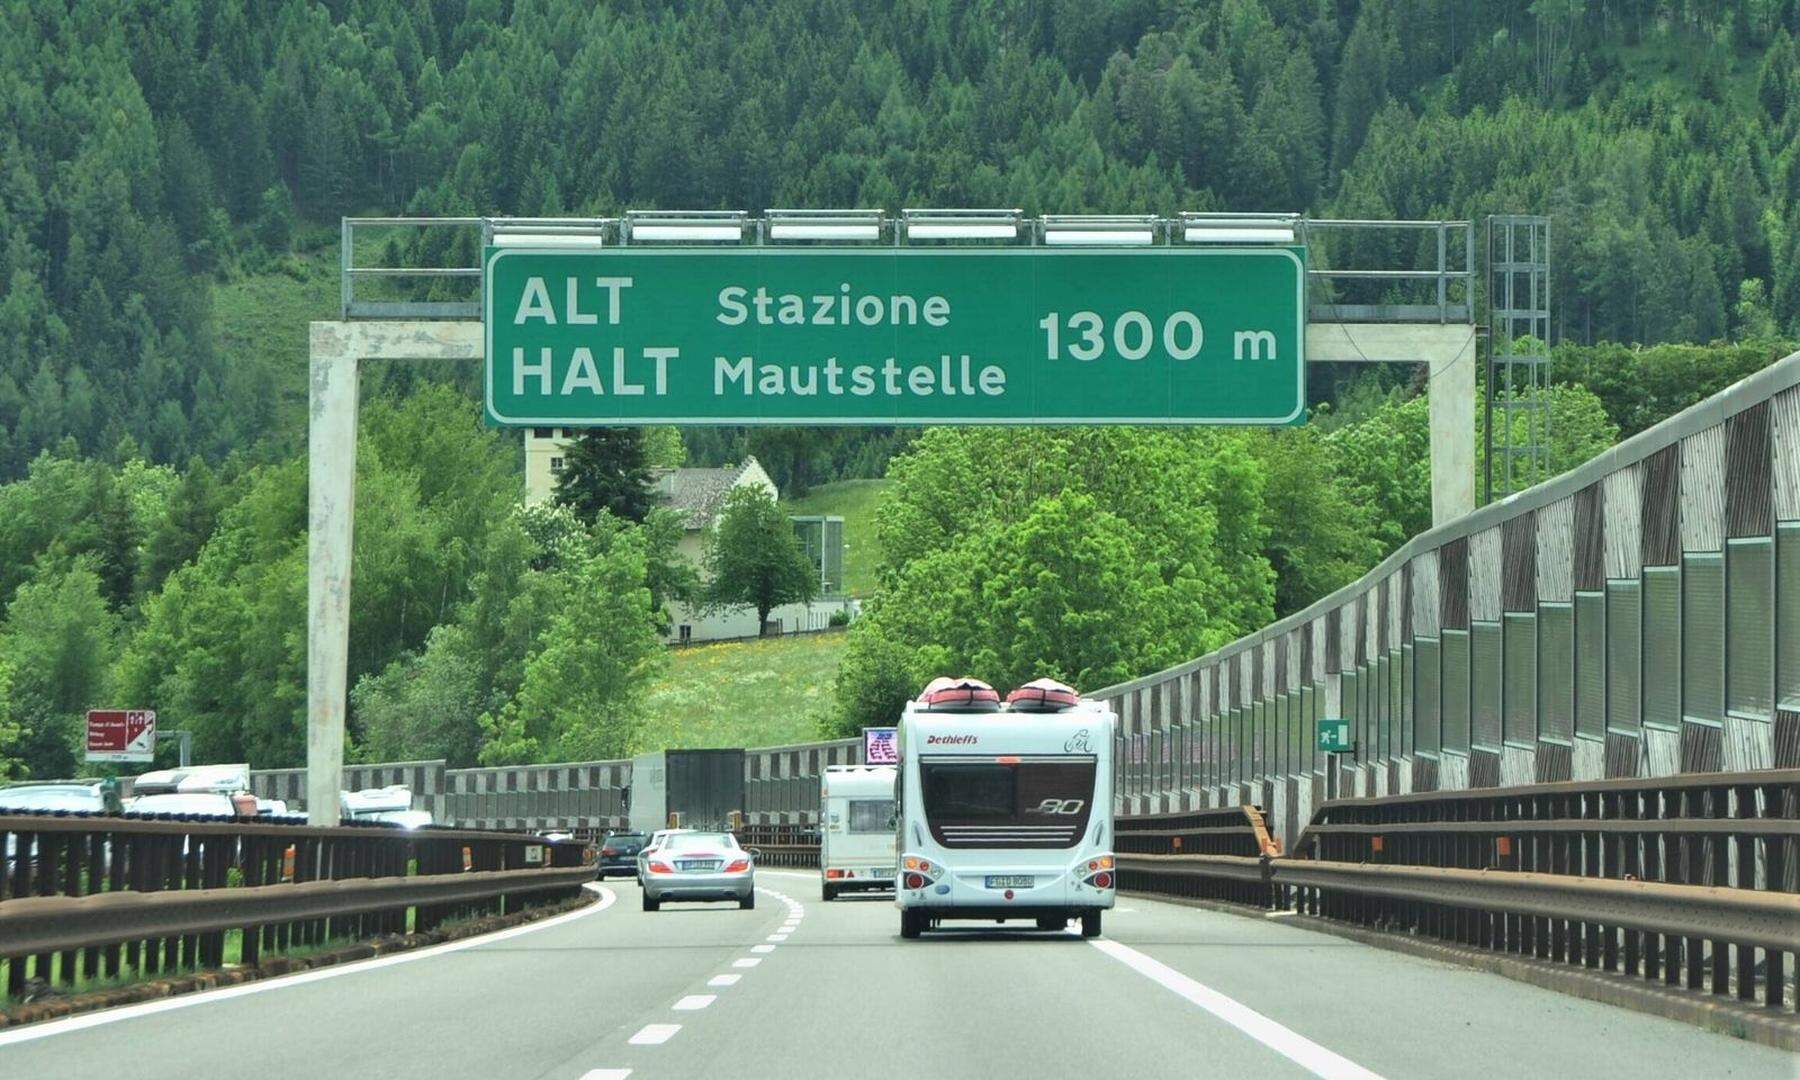 https://img.diepresse.com/public/incoming/ld6gnm-Italien-Brennero-Brenner-Autobahn-A22-Maut-fuer-alle-motorisierten-Fahrzeuge-Mautstation-bzw-Mautstelle-in-Sterzin_1641750302031585_v0_l.jpg/alternates/ORIGINAL/Italien-Brennero-Brenner-Autobahn-A22-Maut-fuer-alle-motorisierten-Fahrzeuge-Mautstation-bzw-Mautstelle-in-Sterzin_1641750302031585_v0_l.jpg